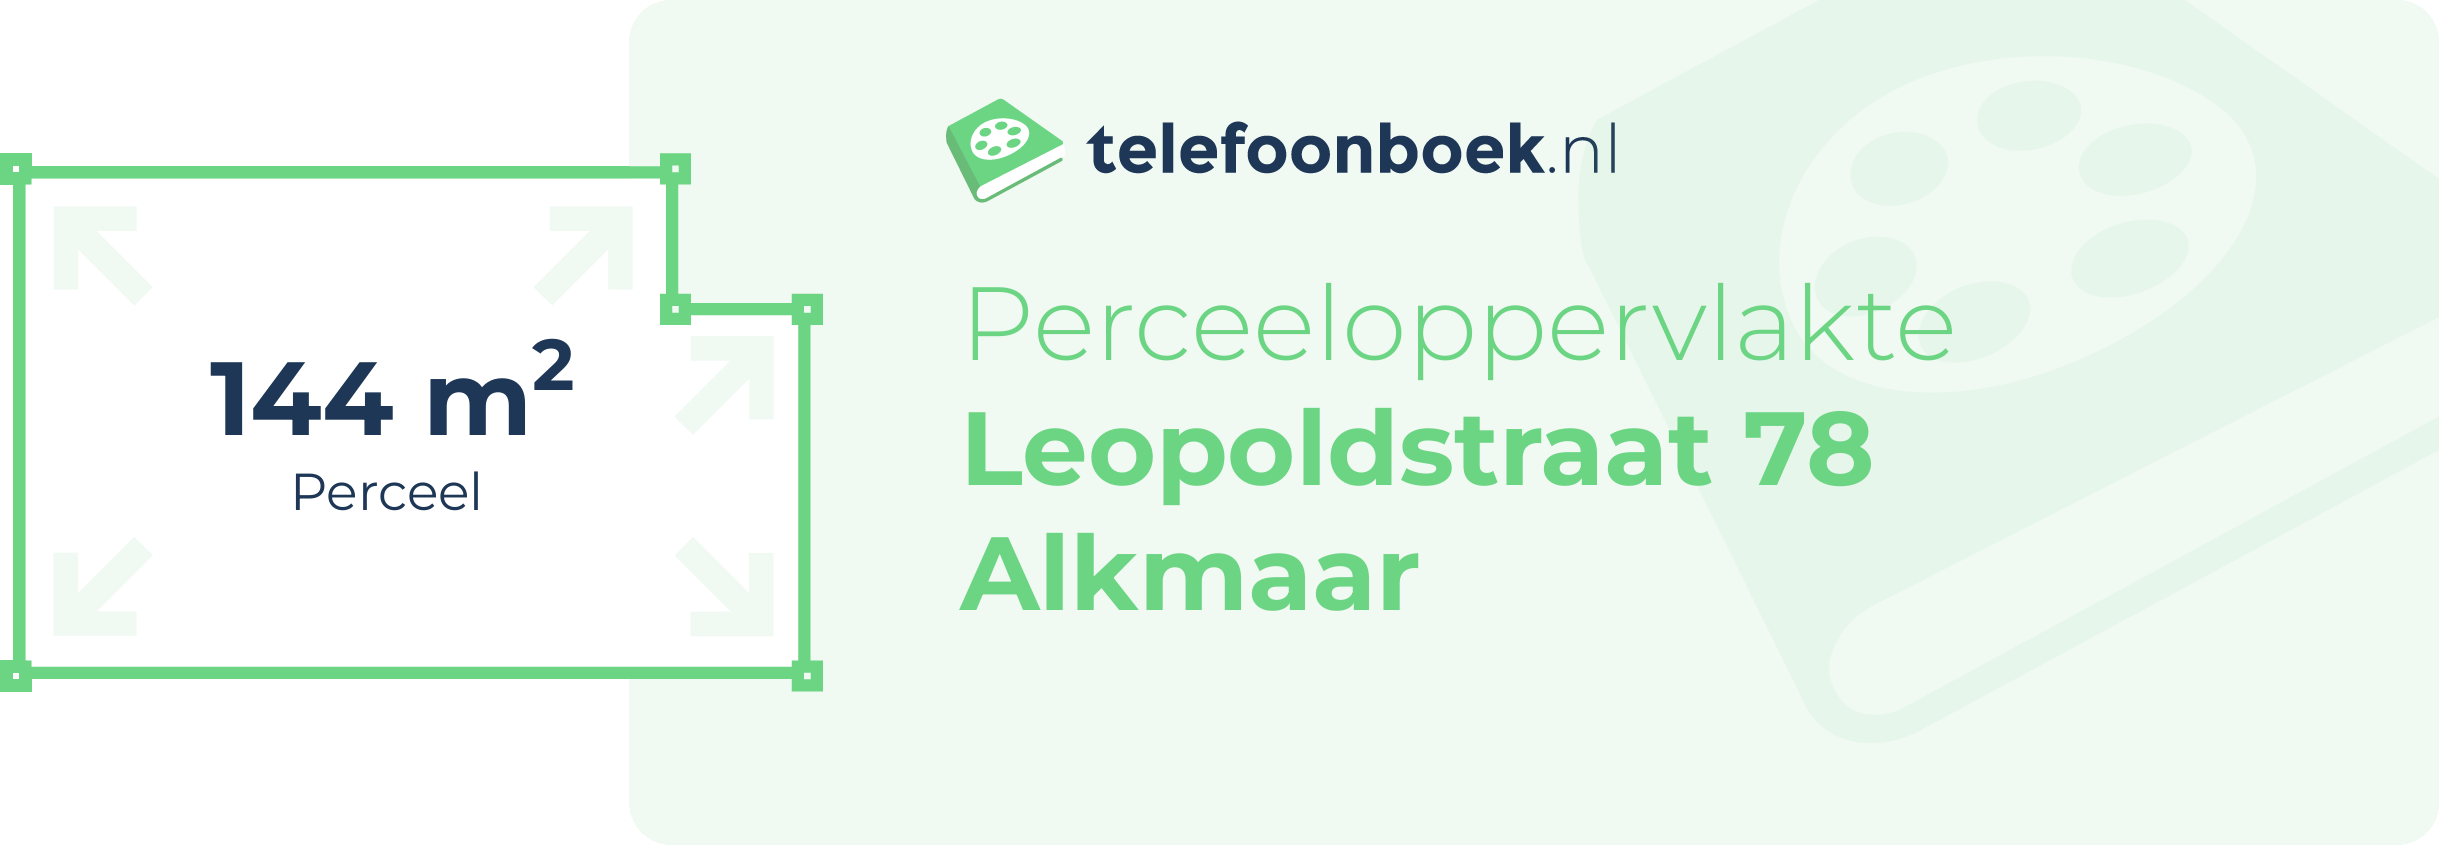 Perceeloppervlakte Leopoldstraat 78 Alkmaar